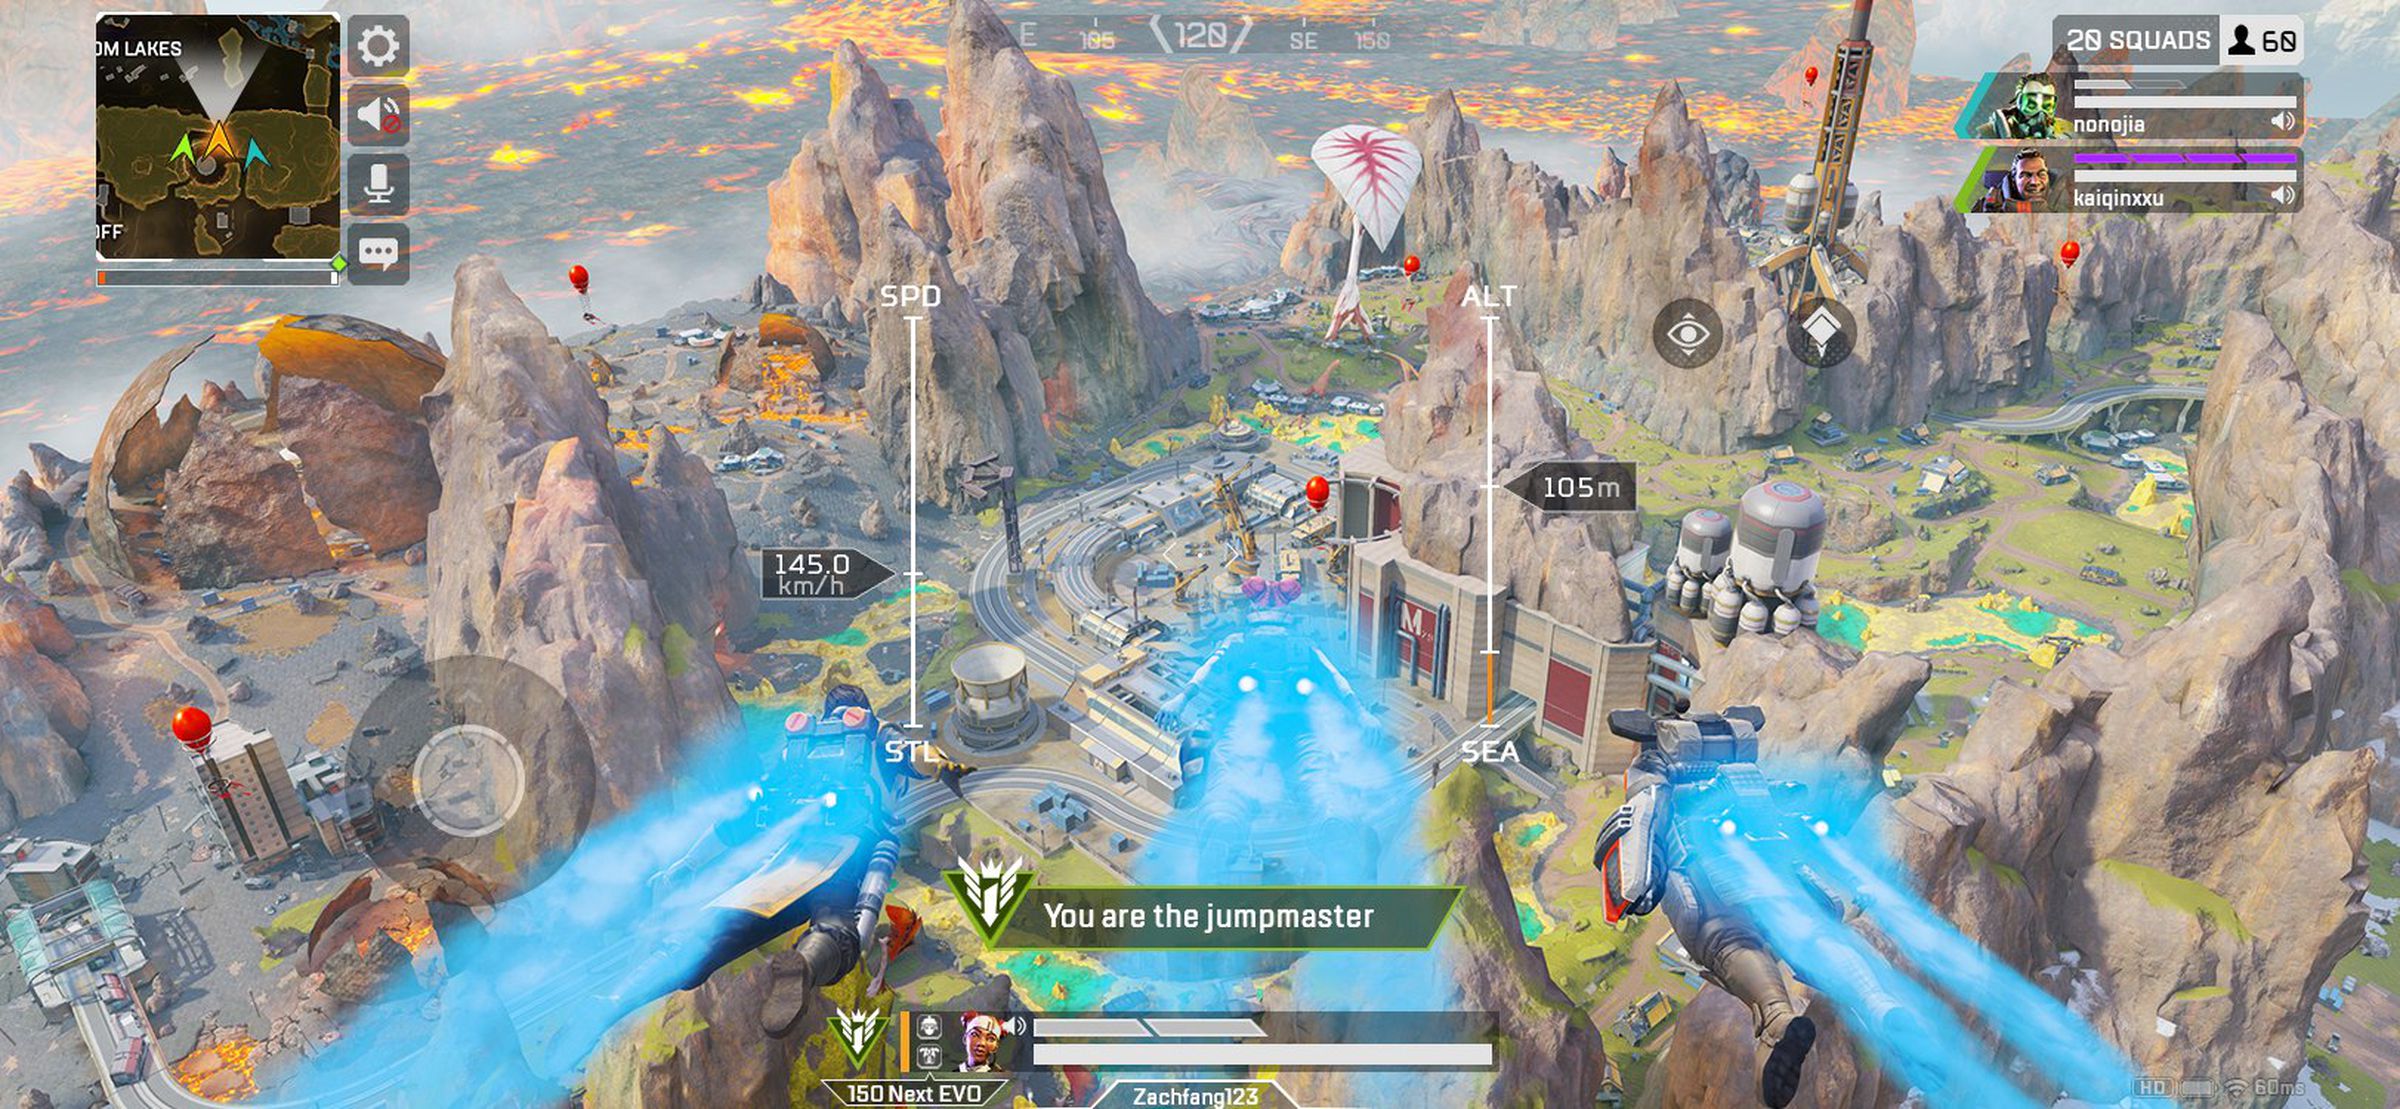 Captura de pantalla de Apex Legends Mobile: un río fluye a través de un paisaje rocoso;  una leyenda dice 